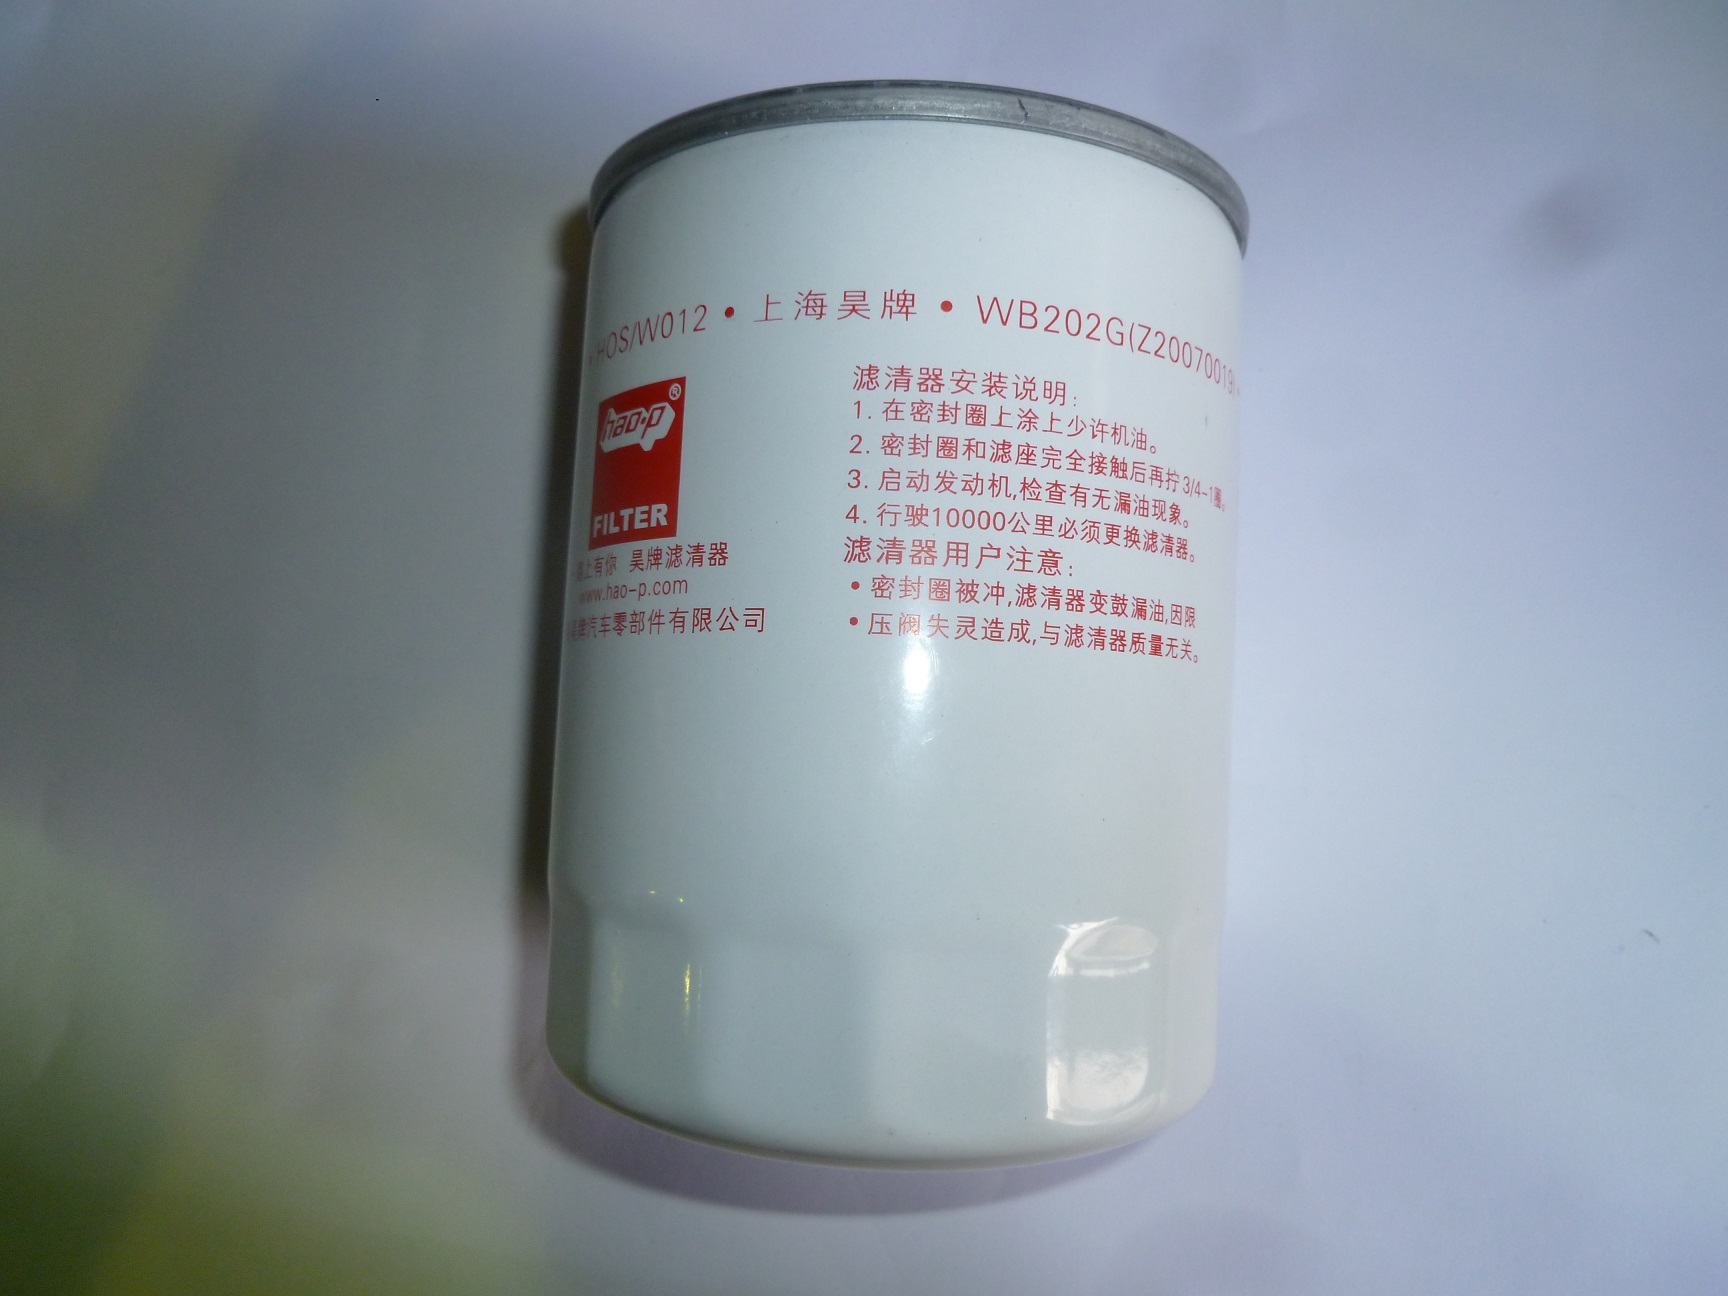 Фильтр масляный Weichai WP4.1D50E2 / Oil filter element